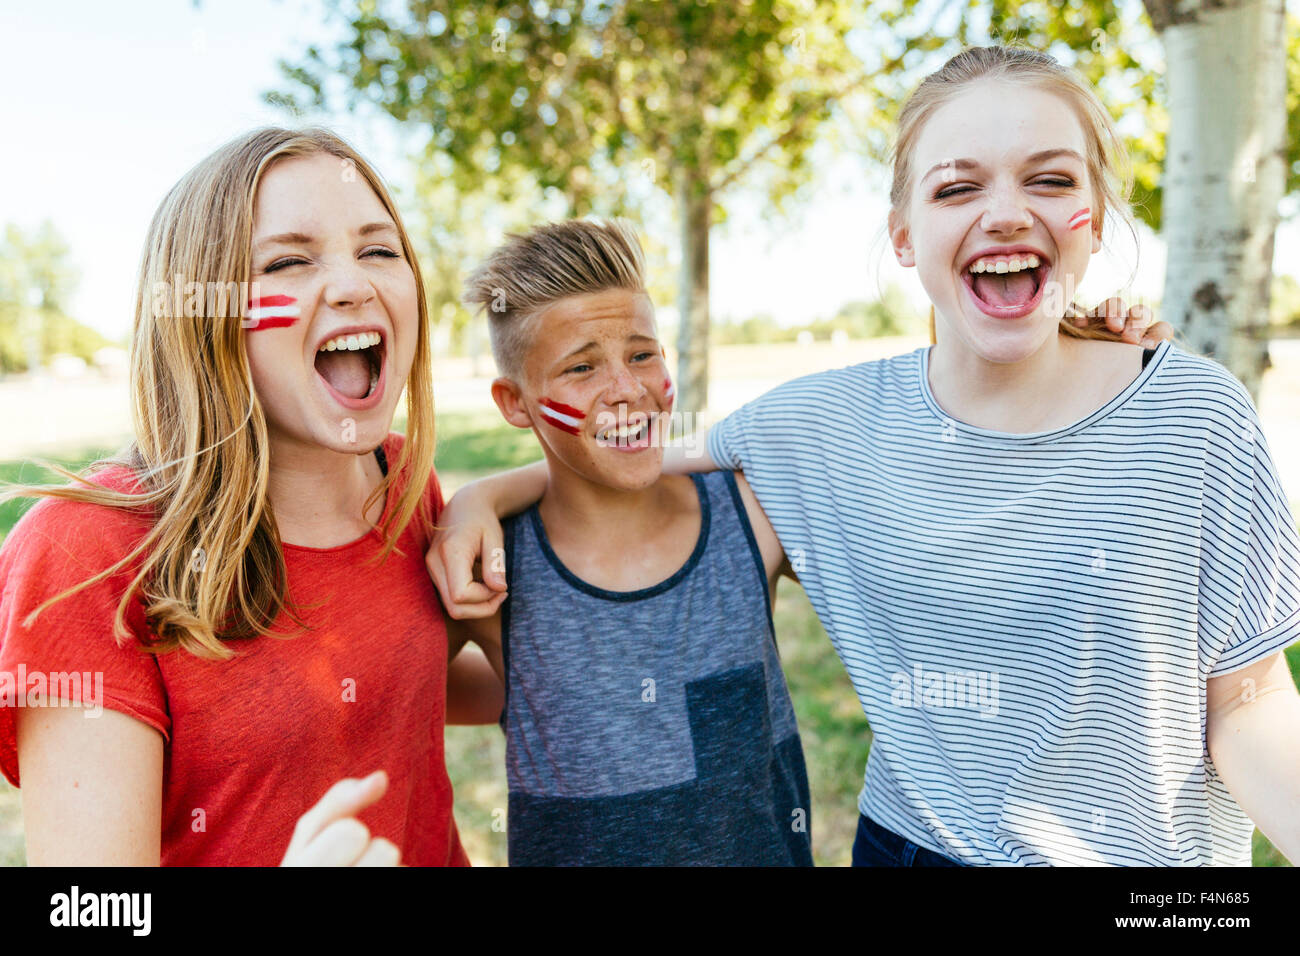 Österreich, drei Jugendliche mit nationalen Farben gemalt auf ihren Wangen gemeinsam feiern Stockfoto